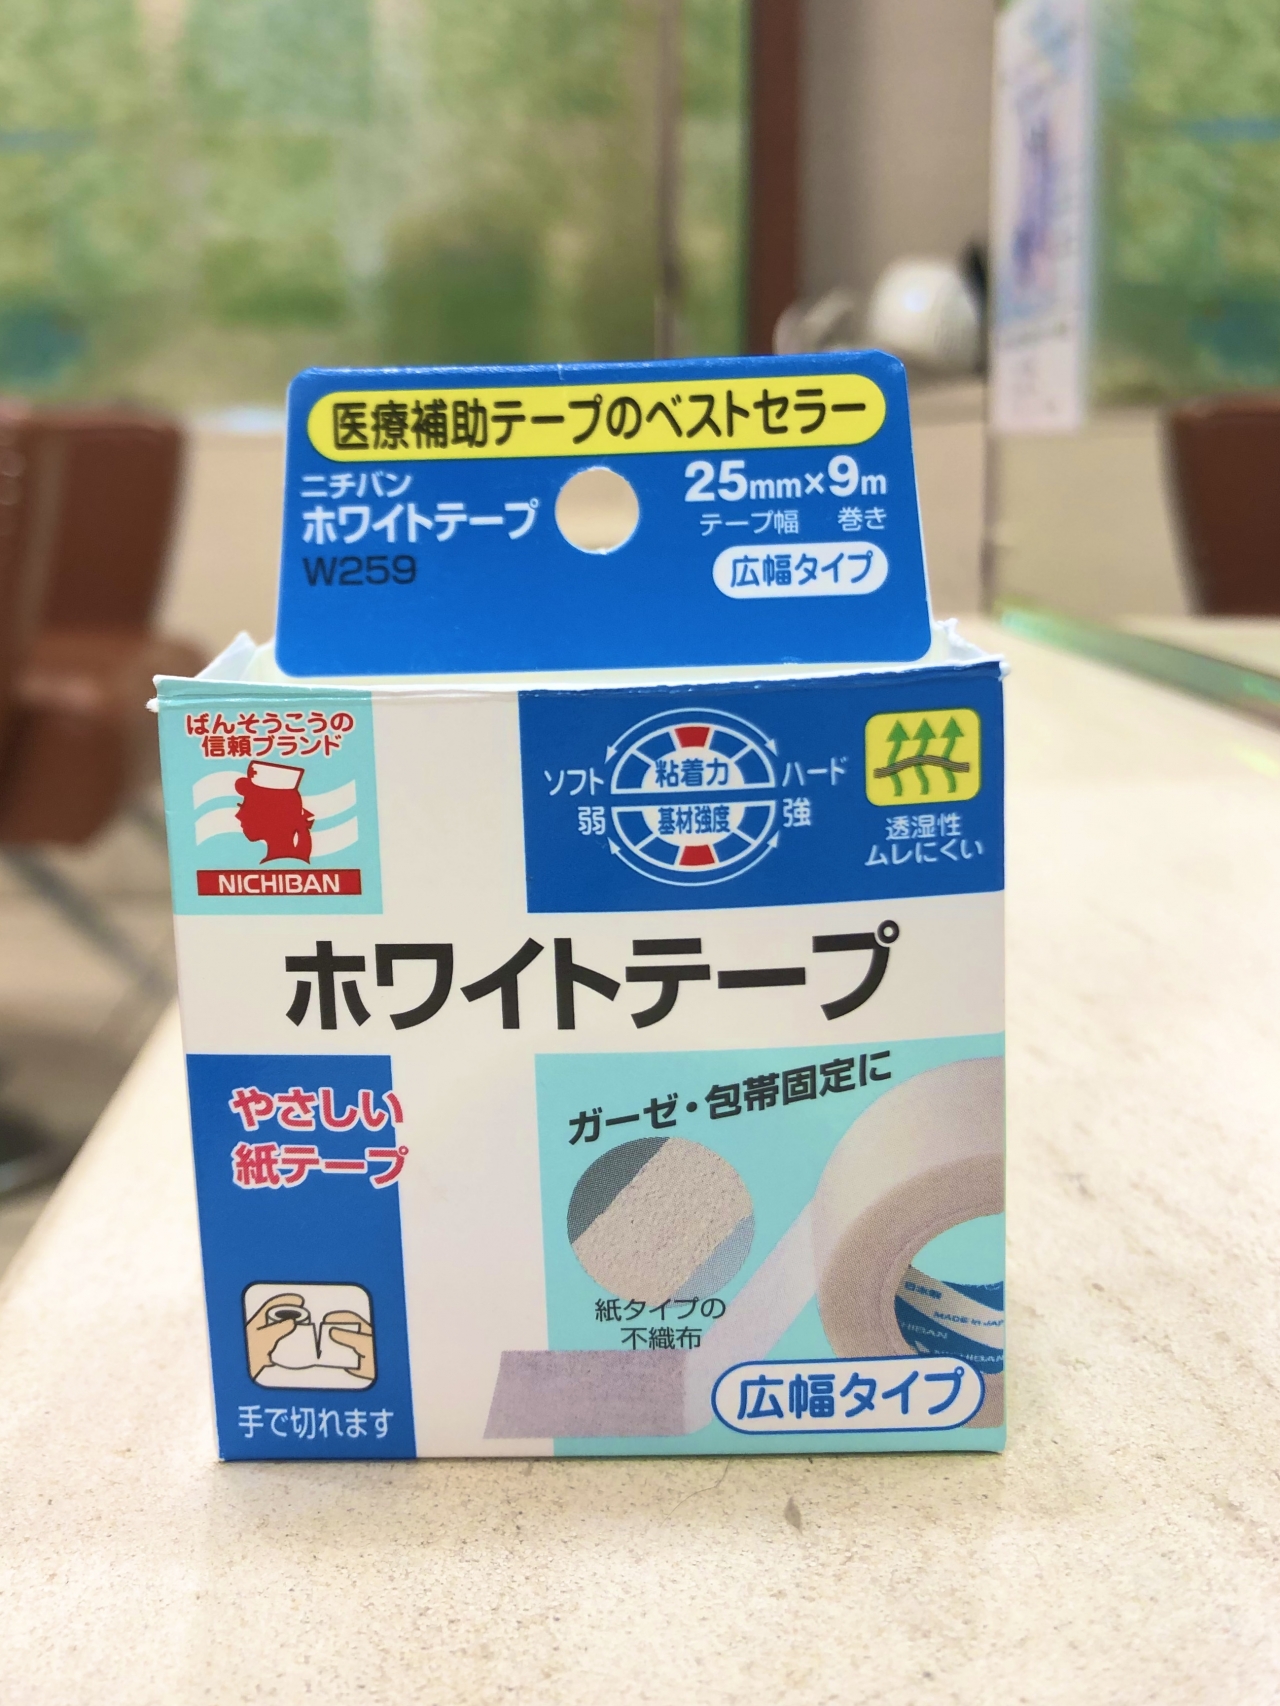 90円 【最新入荷】 ニチバン ホワイトテープ W259